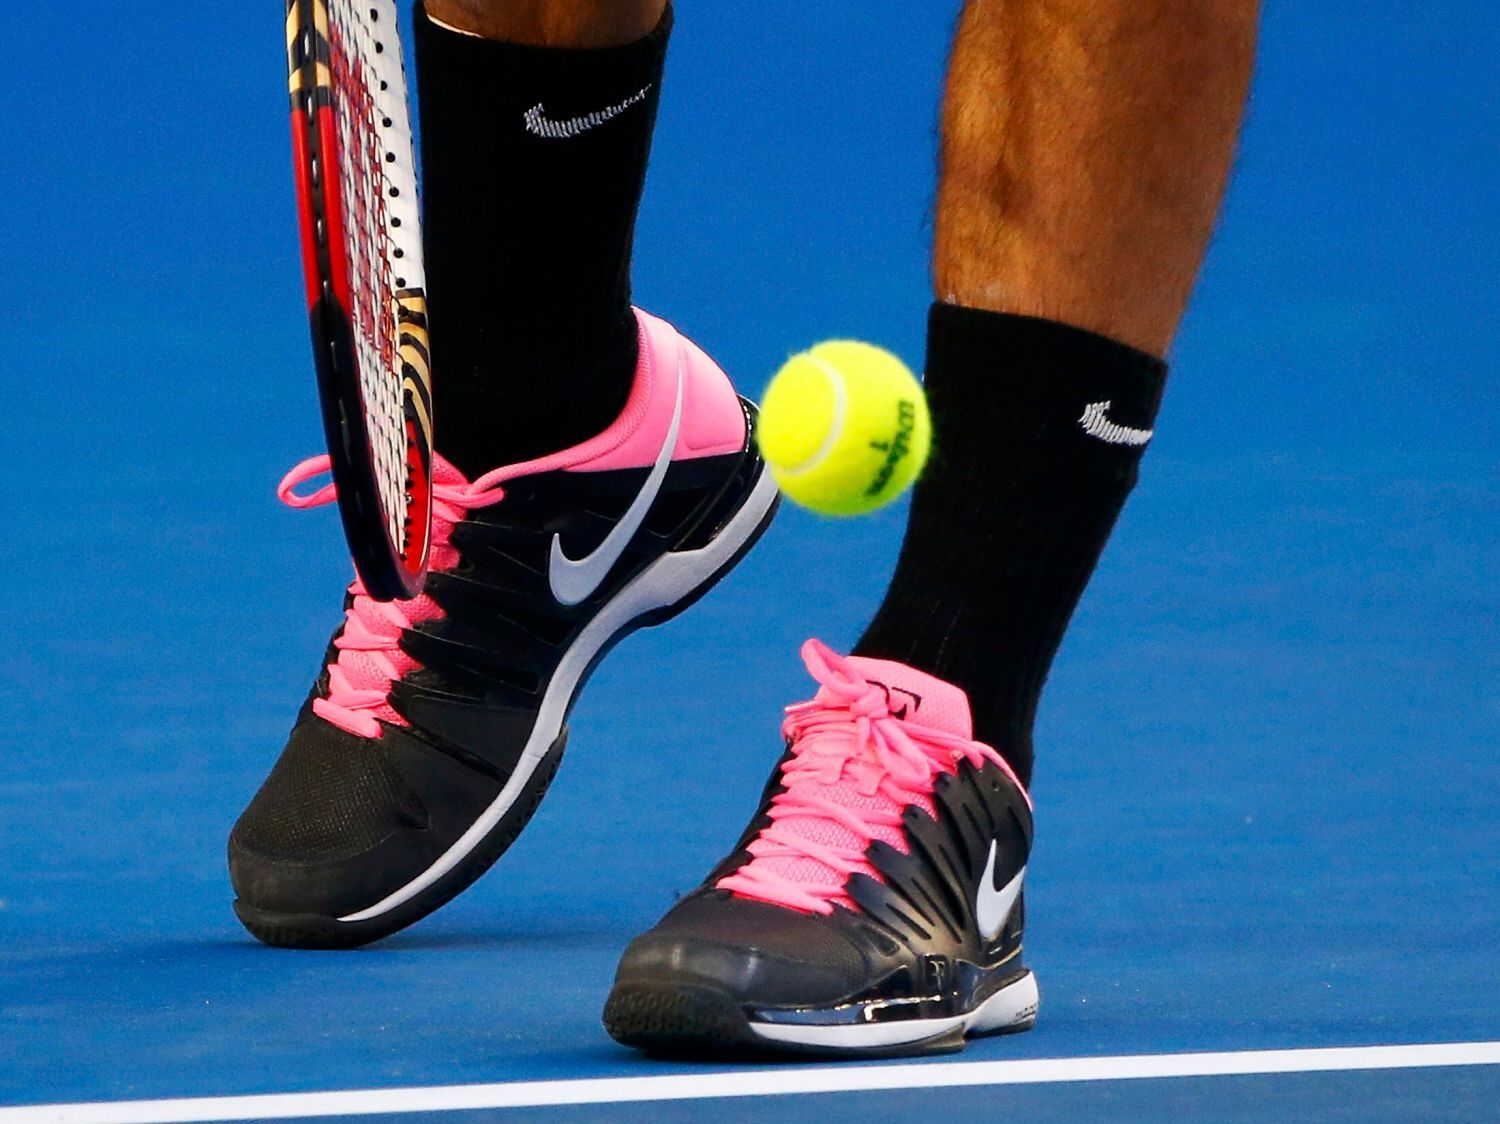 Australian Open: Roger Federer